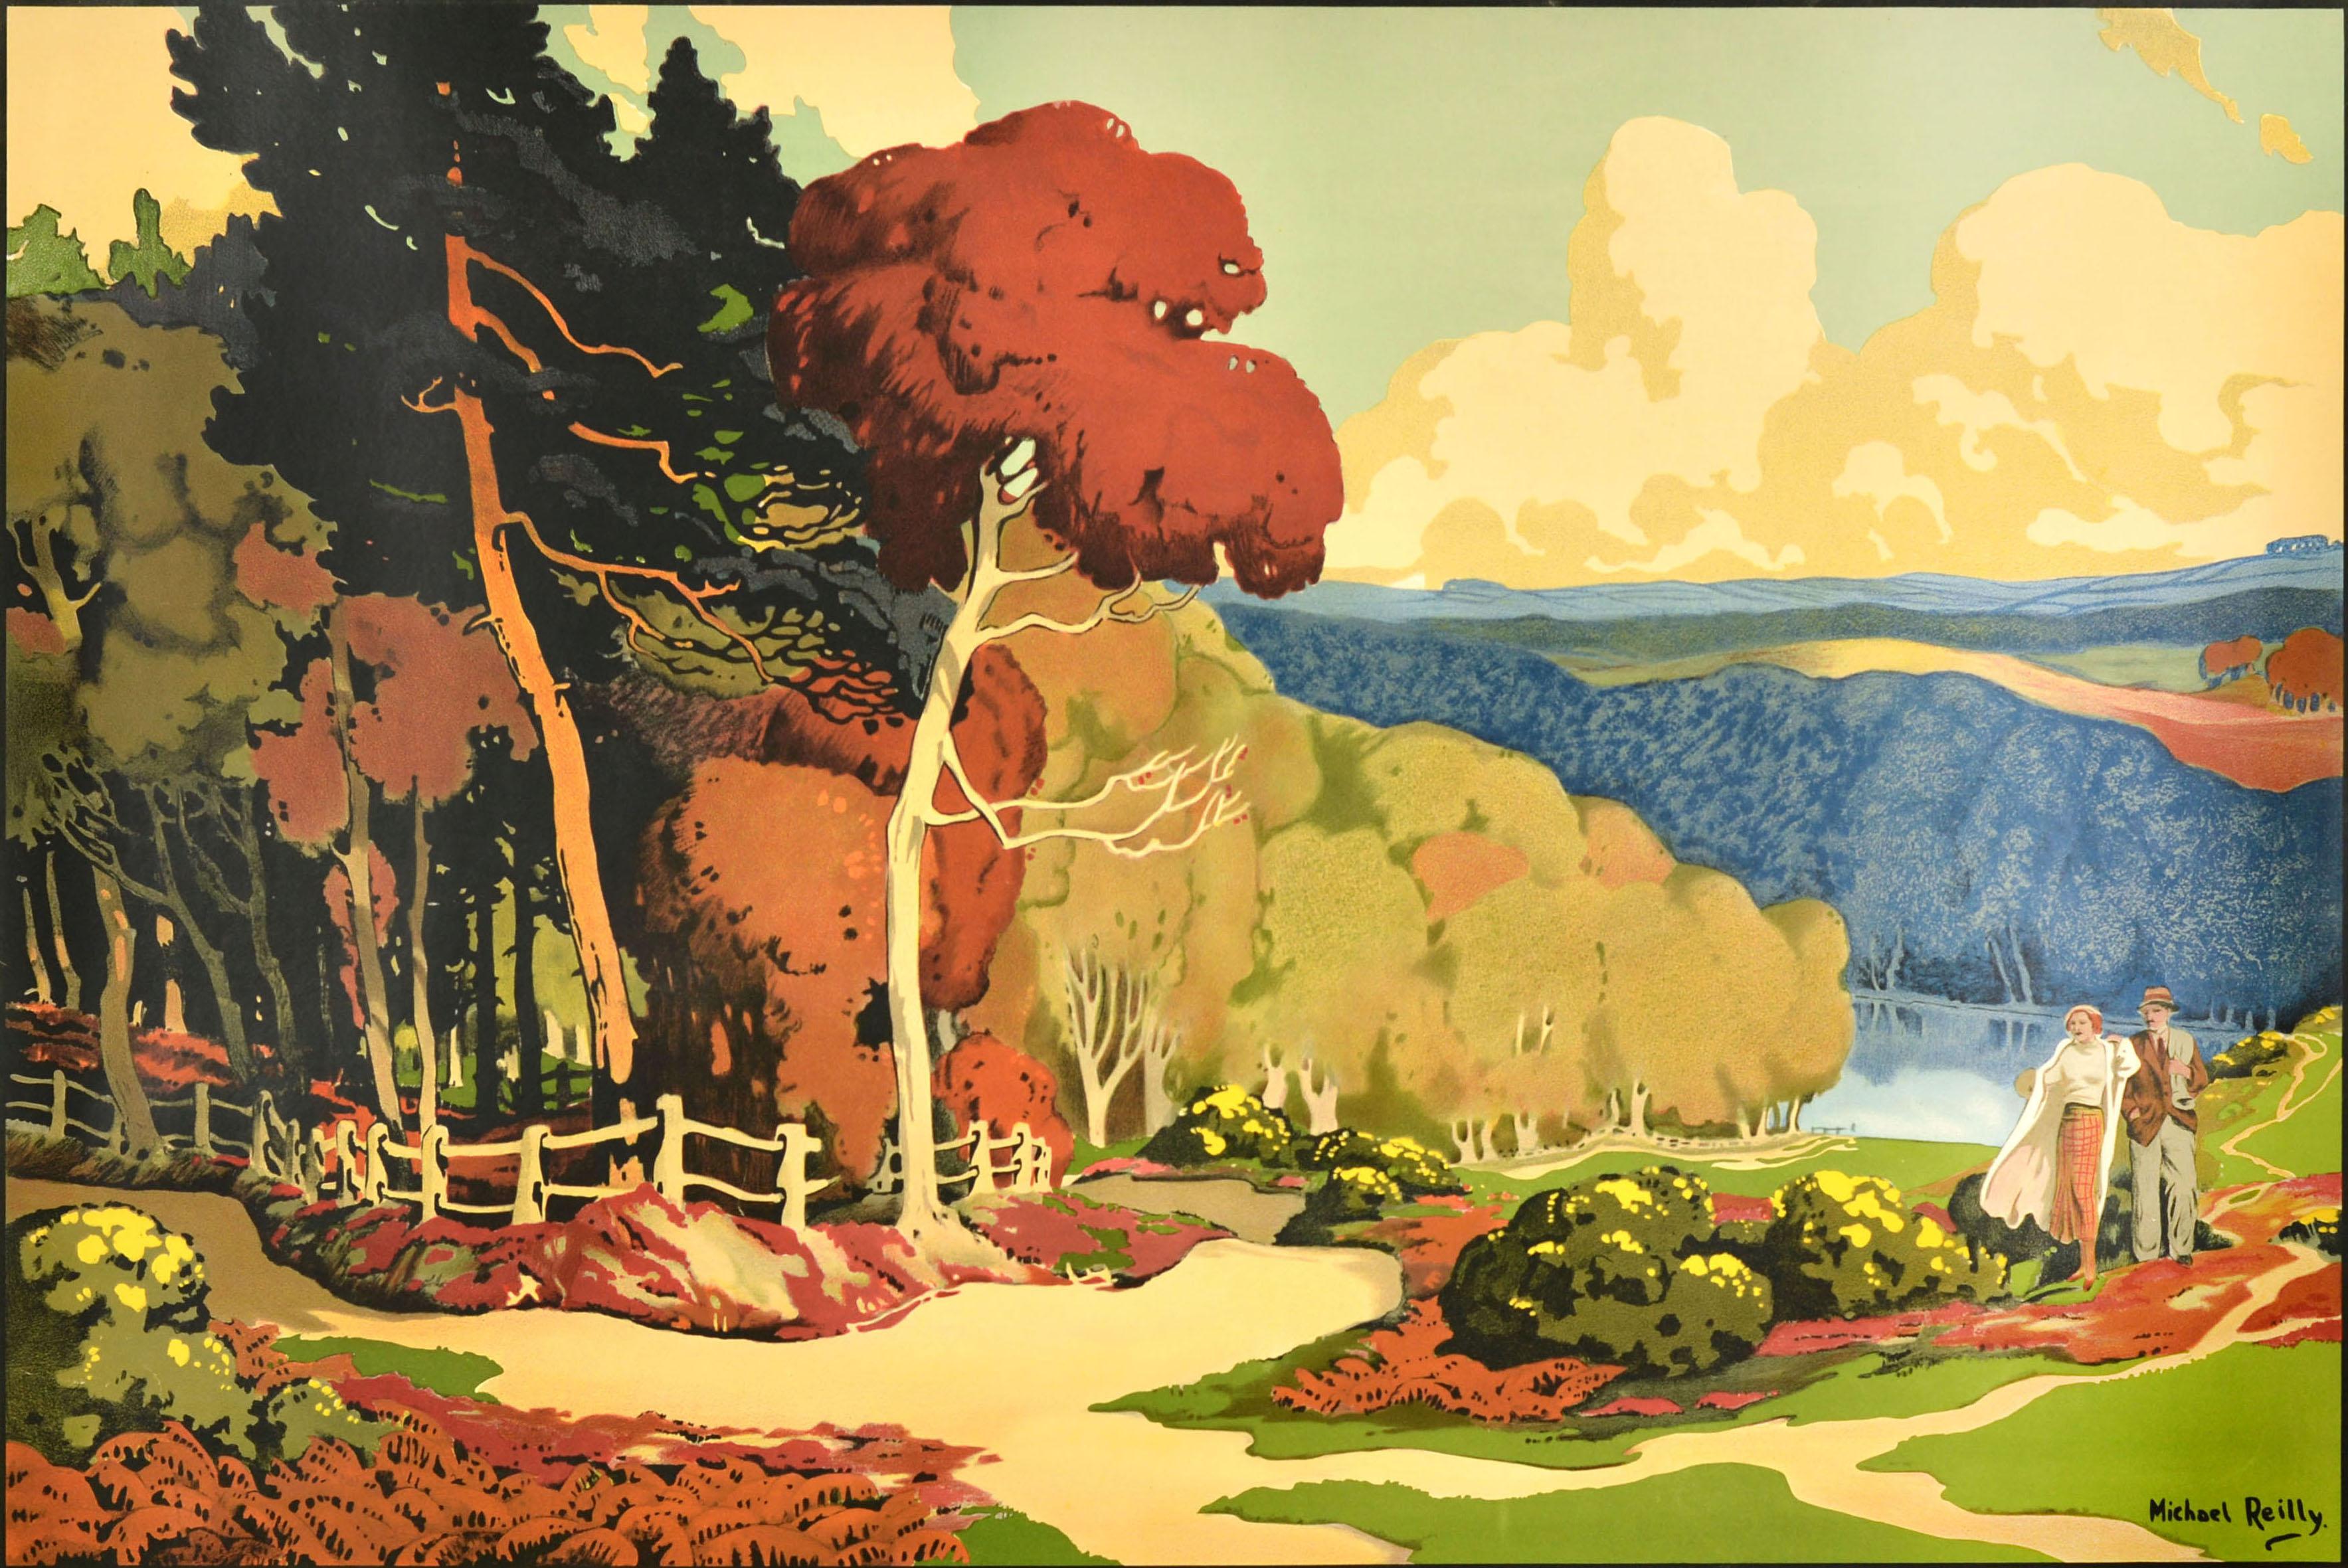 Original Vintage Reiseplakat für die königliche Stadt Sutton Coldfield Sutton Park mit atemberaubenden Kunstwerk von Michael Reilly (b.1898) zeigt ein Paar genießen einen Spaziergang auf einem Hügel vorbei an Bäumen in den Park mit einem ruhigen